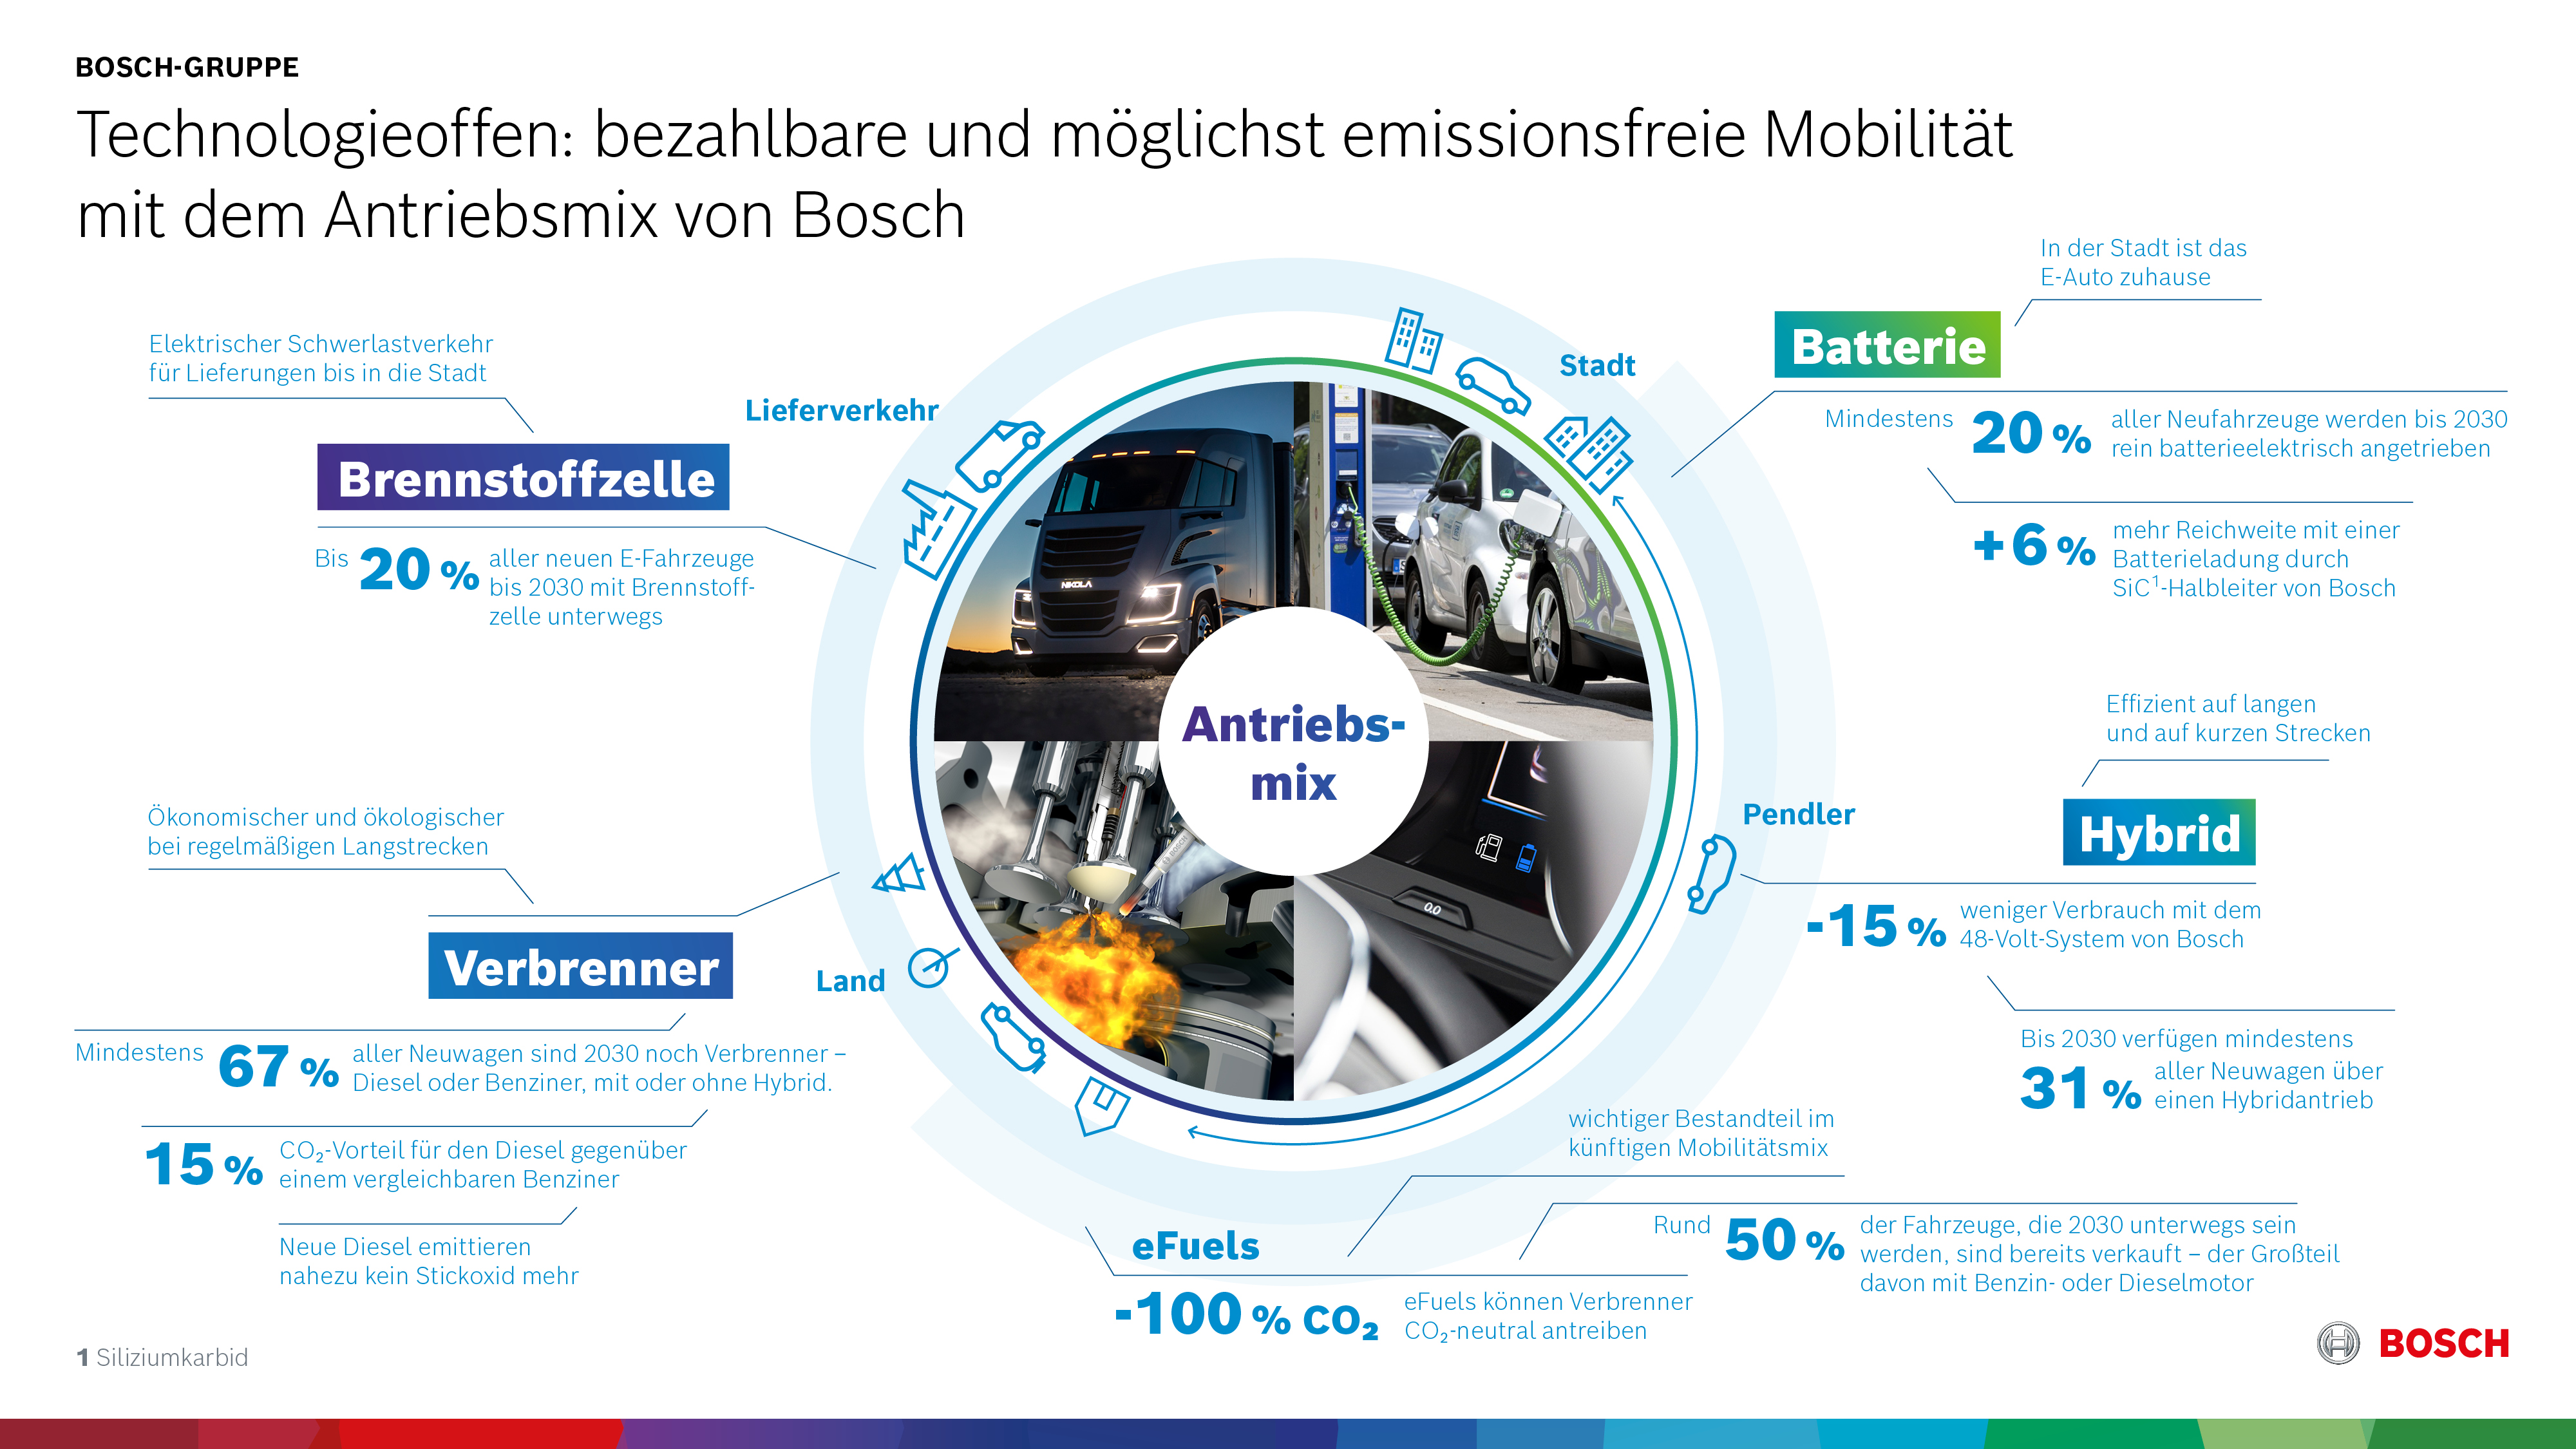 Technologieoffen: bezahlbare und möglichst emissionsfreie Mobilität mit dem Antriebsmix von Bosch